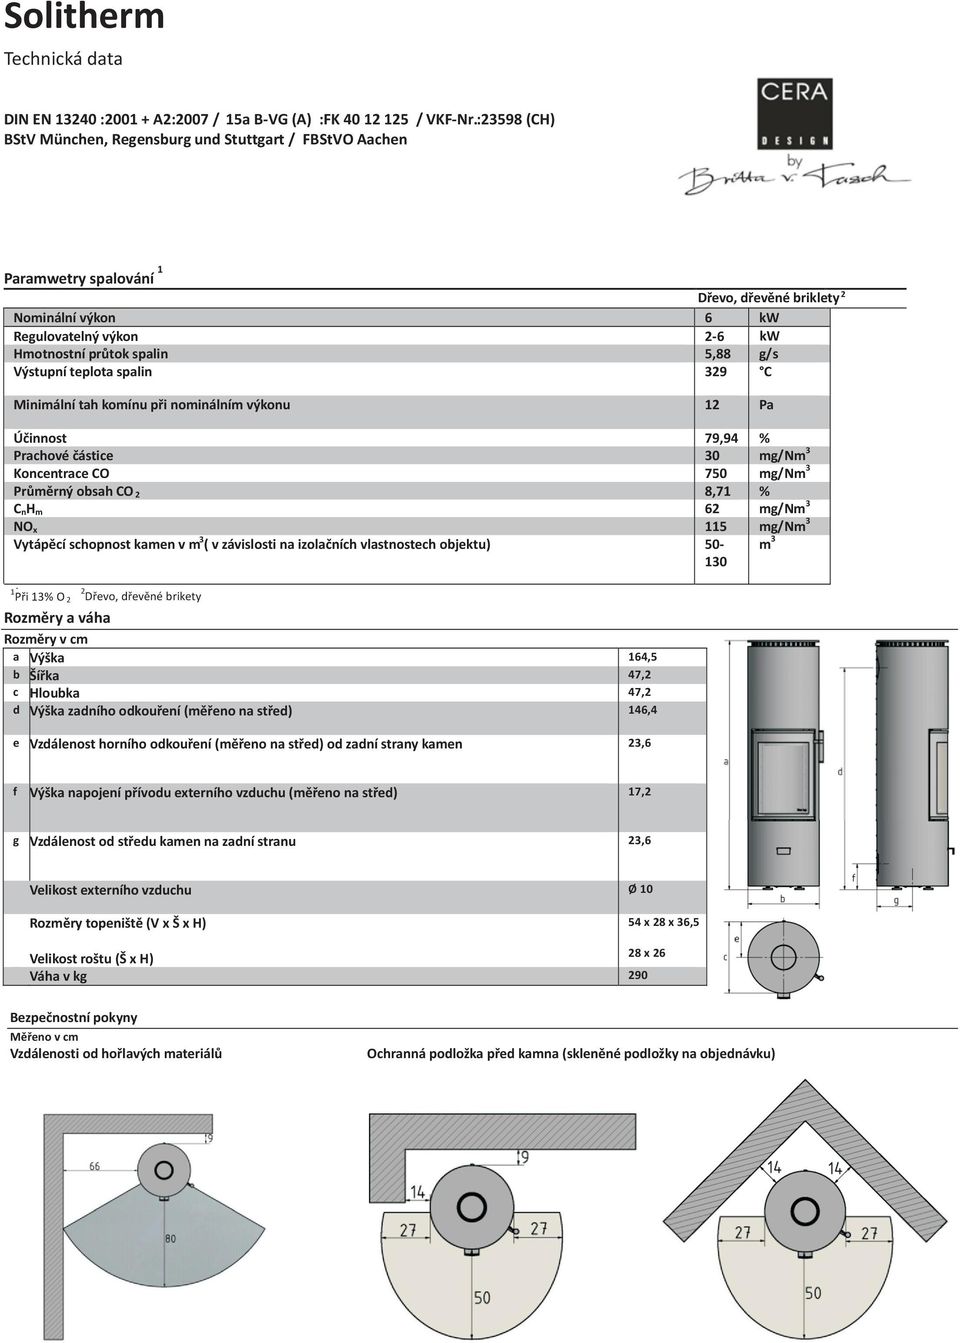 Výstupní teplota spalin 329 C Minimální tah komínu při nominálním výkonu 12 Pa Účinnost 79,94 % Prachové částice 30 mg/nm 3 Koncentrace CO 750 mg/nm 3 Průměrný obsah CO 2 8,71 % C nh m 62 mg/nm 3 NO